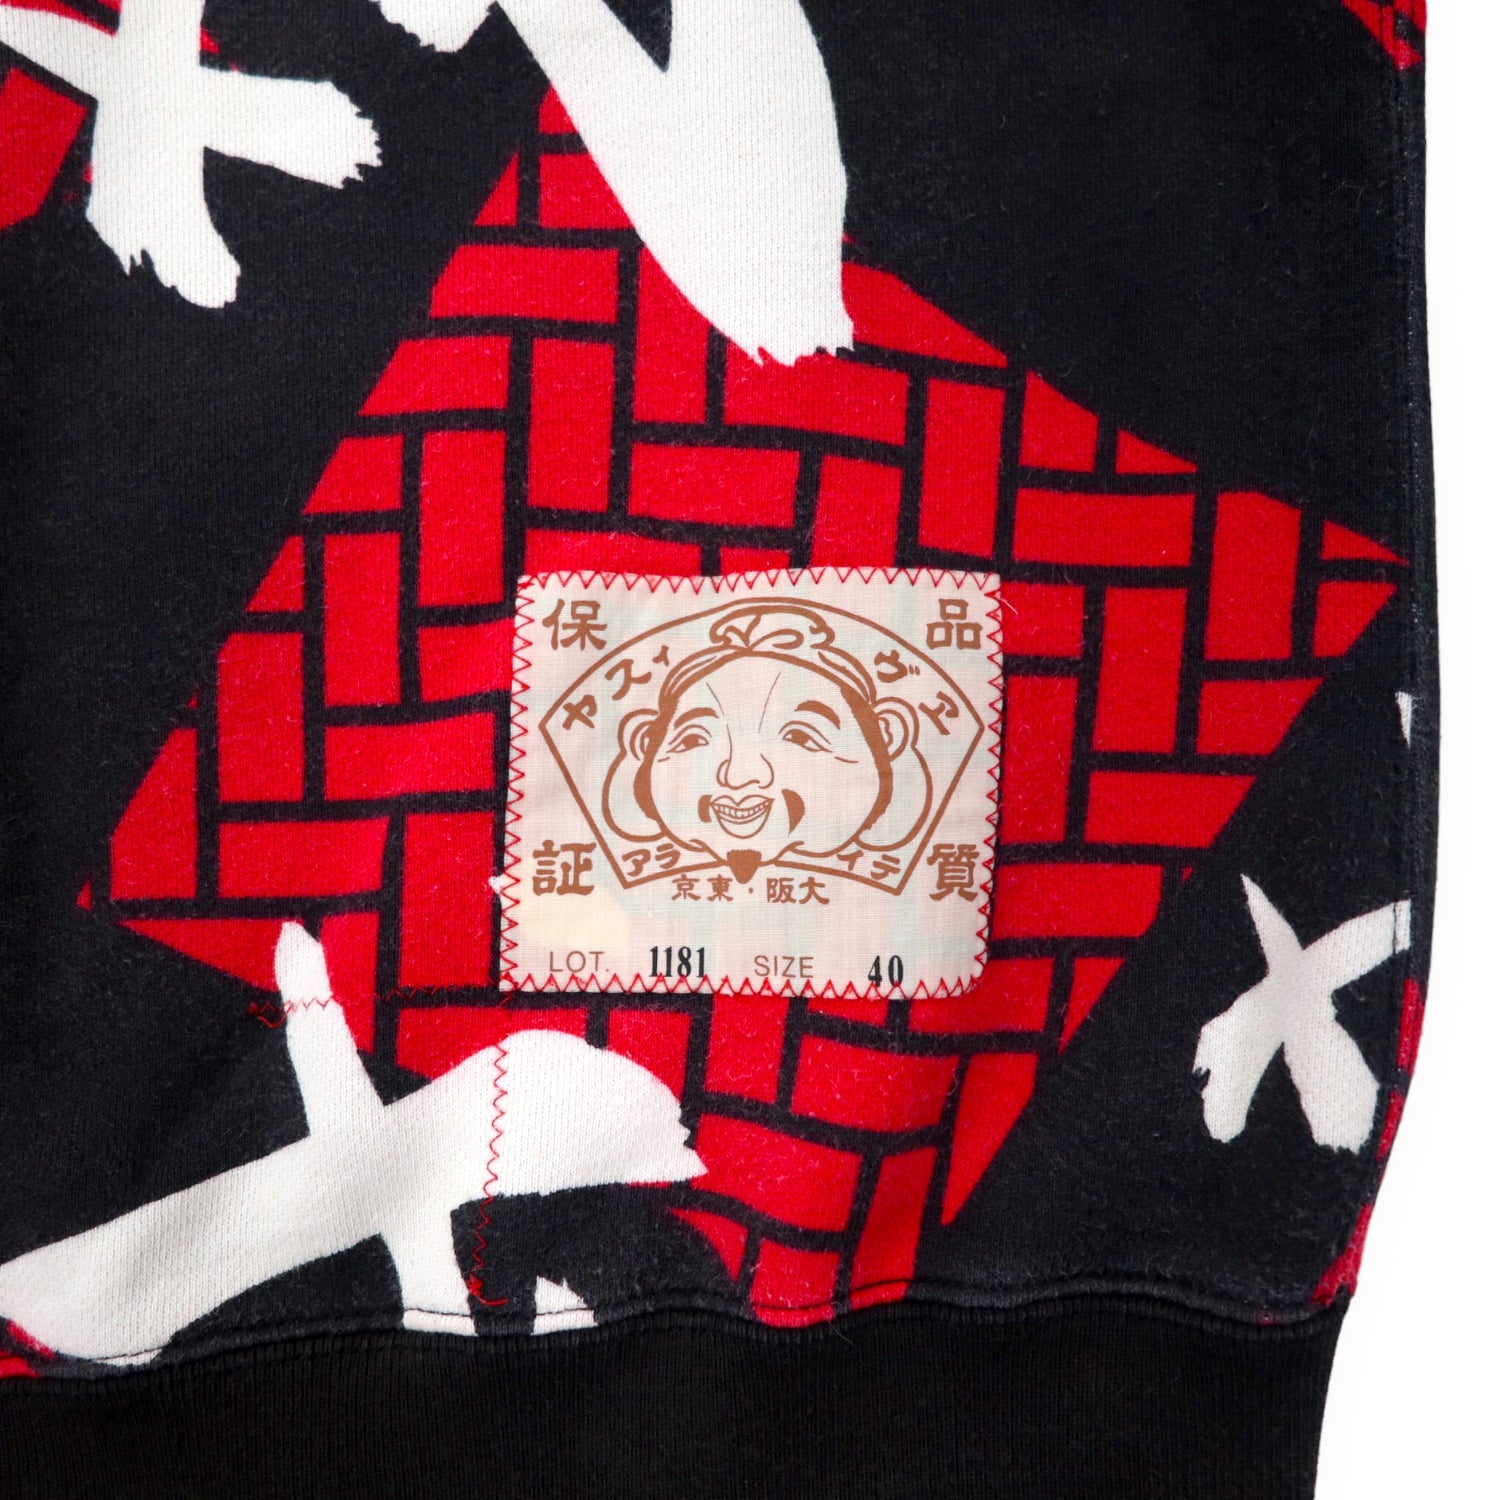 Evisu Patterned Sweatshirt 40 Black Cotton Campaign 1181 – 日本然